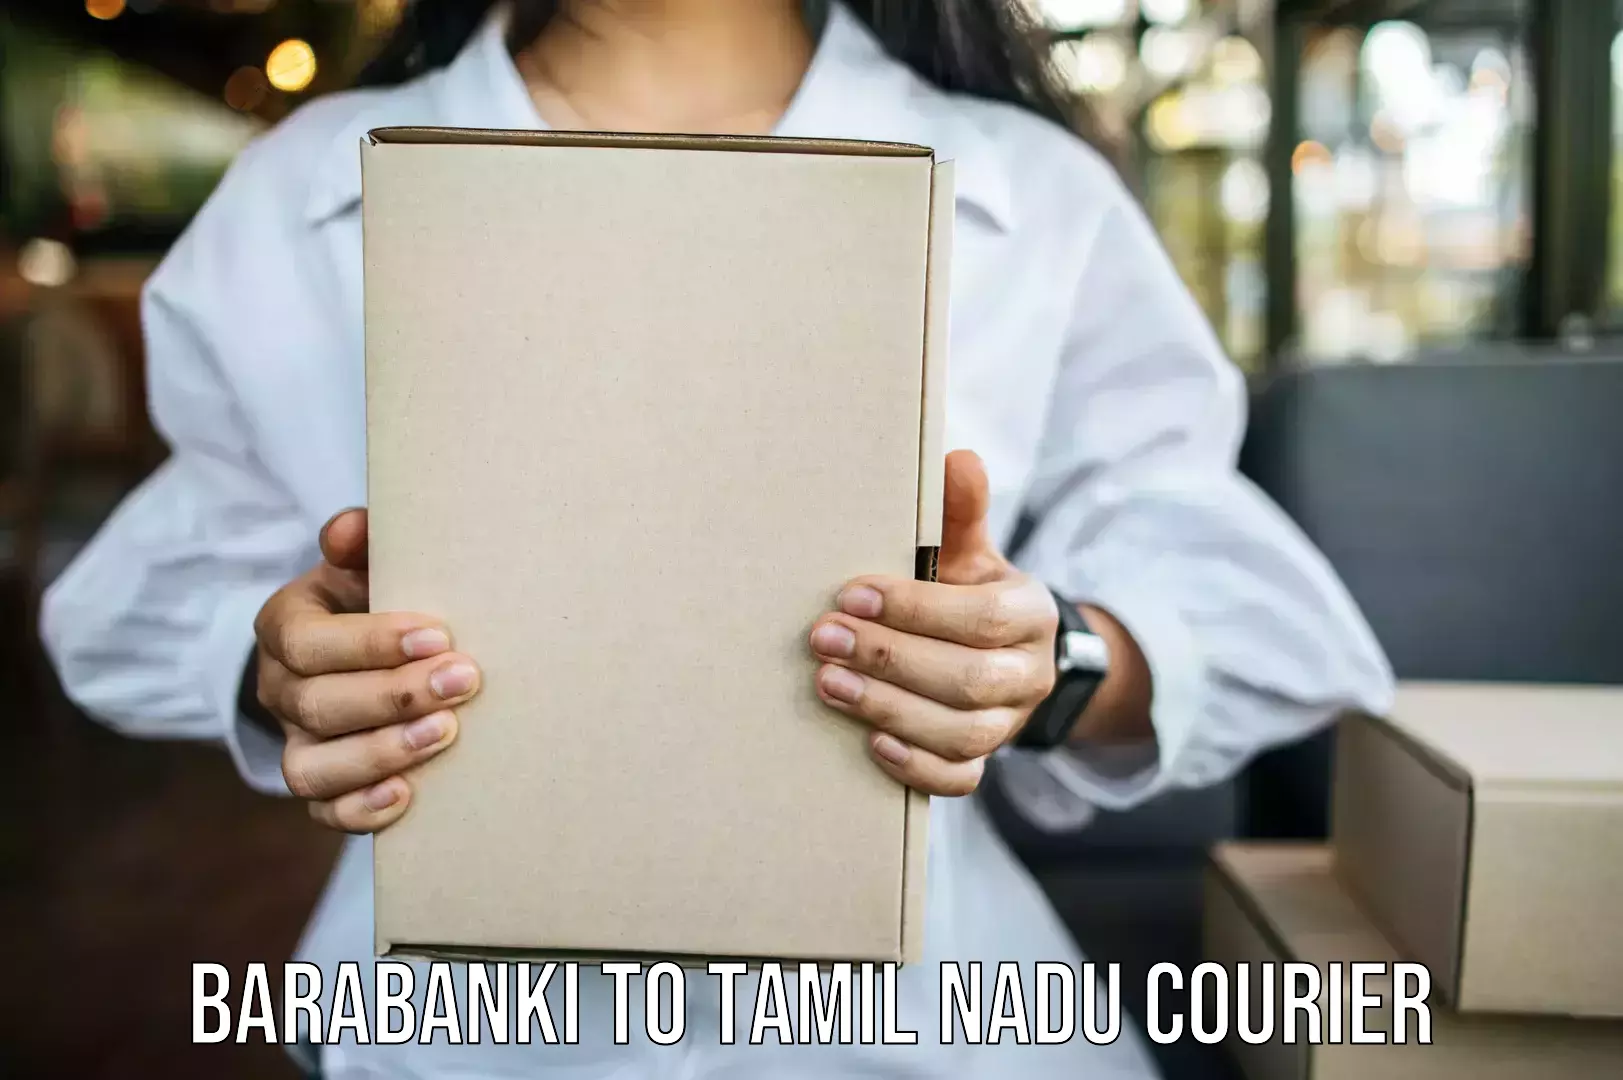 Furniture transport specialists Barabanki to Tamil Nadu